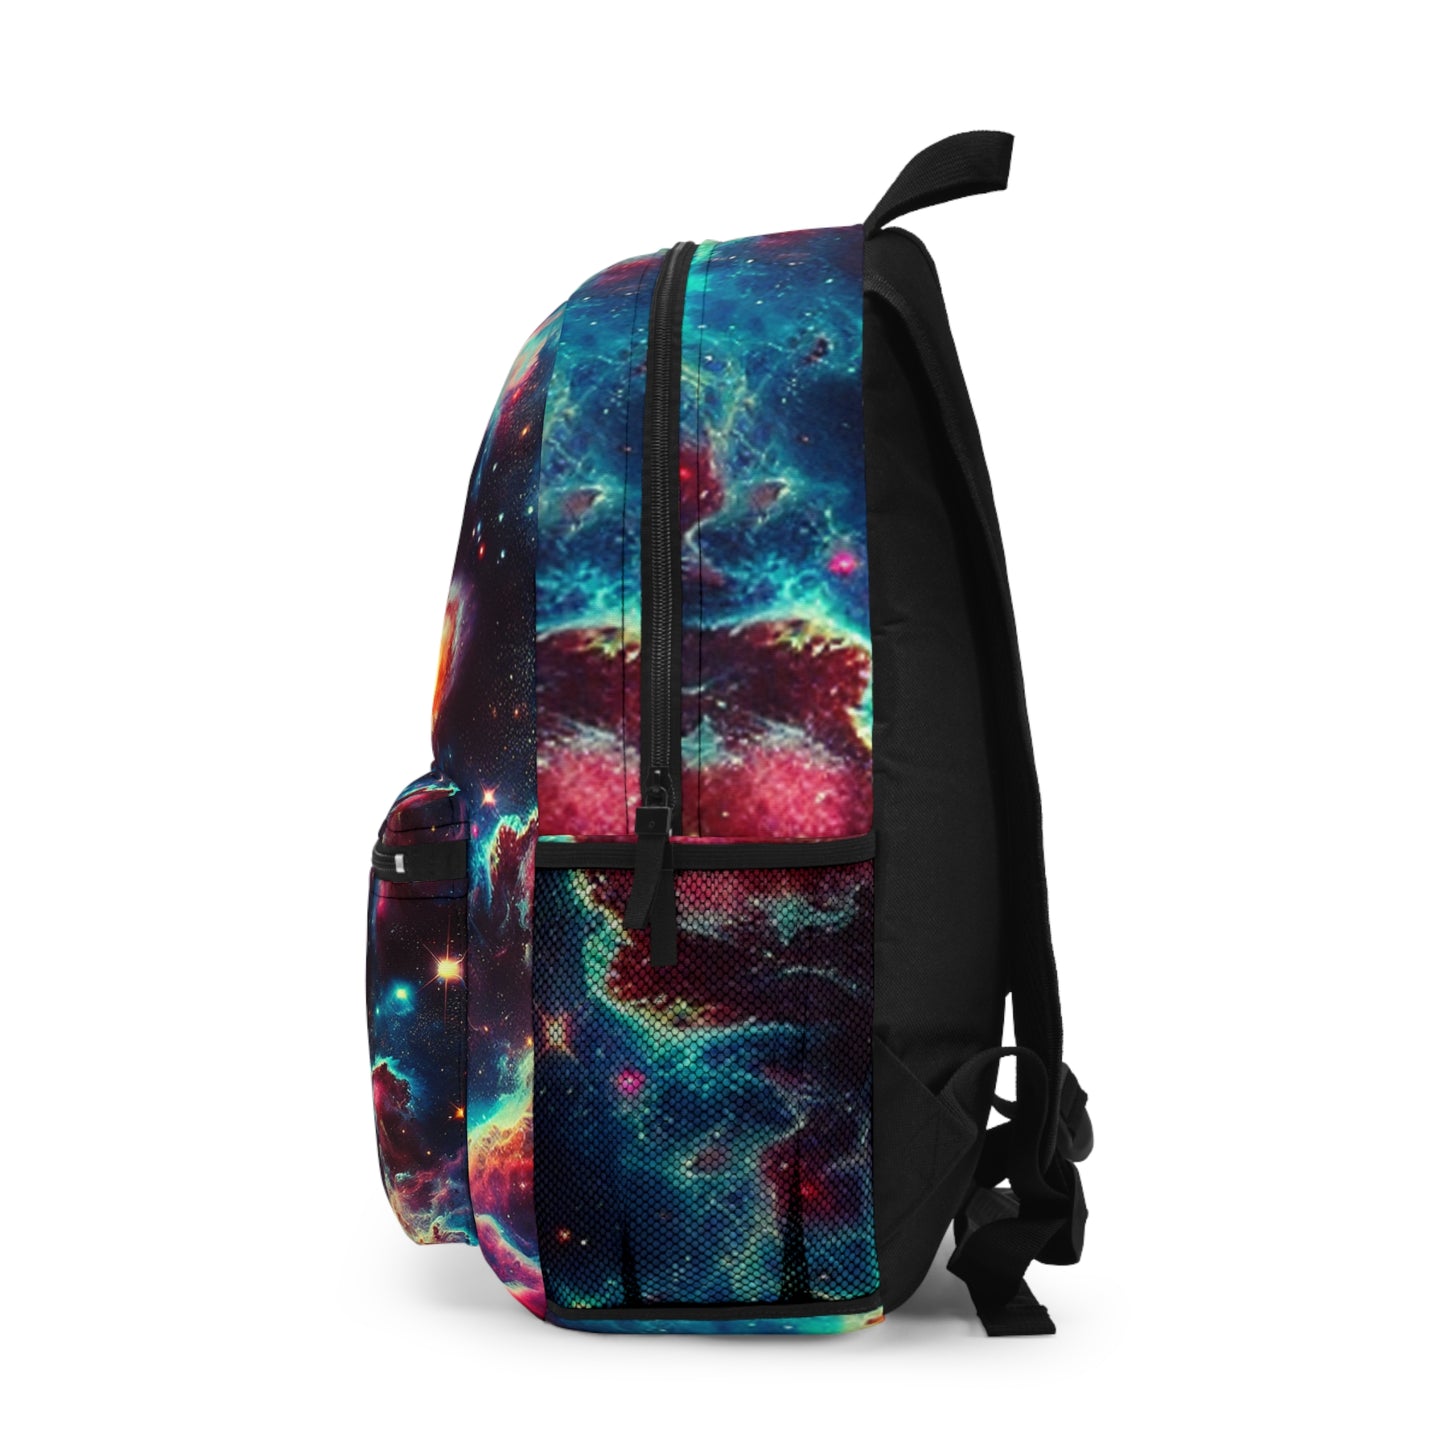 - Backpack